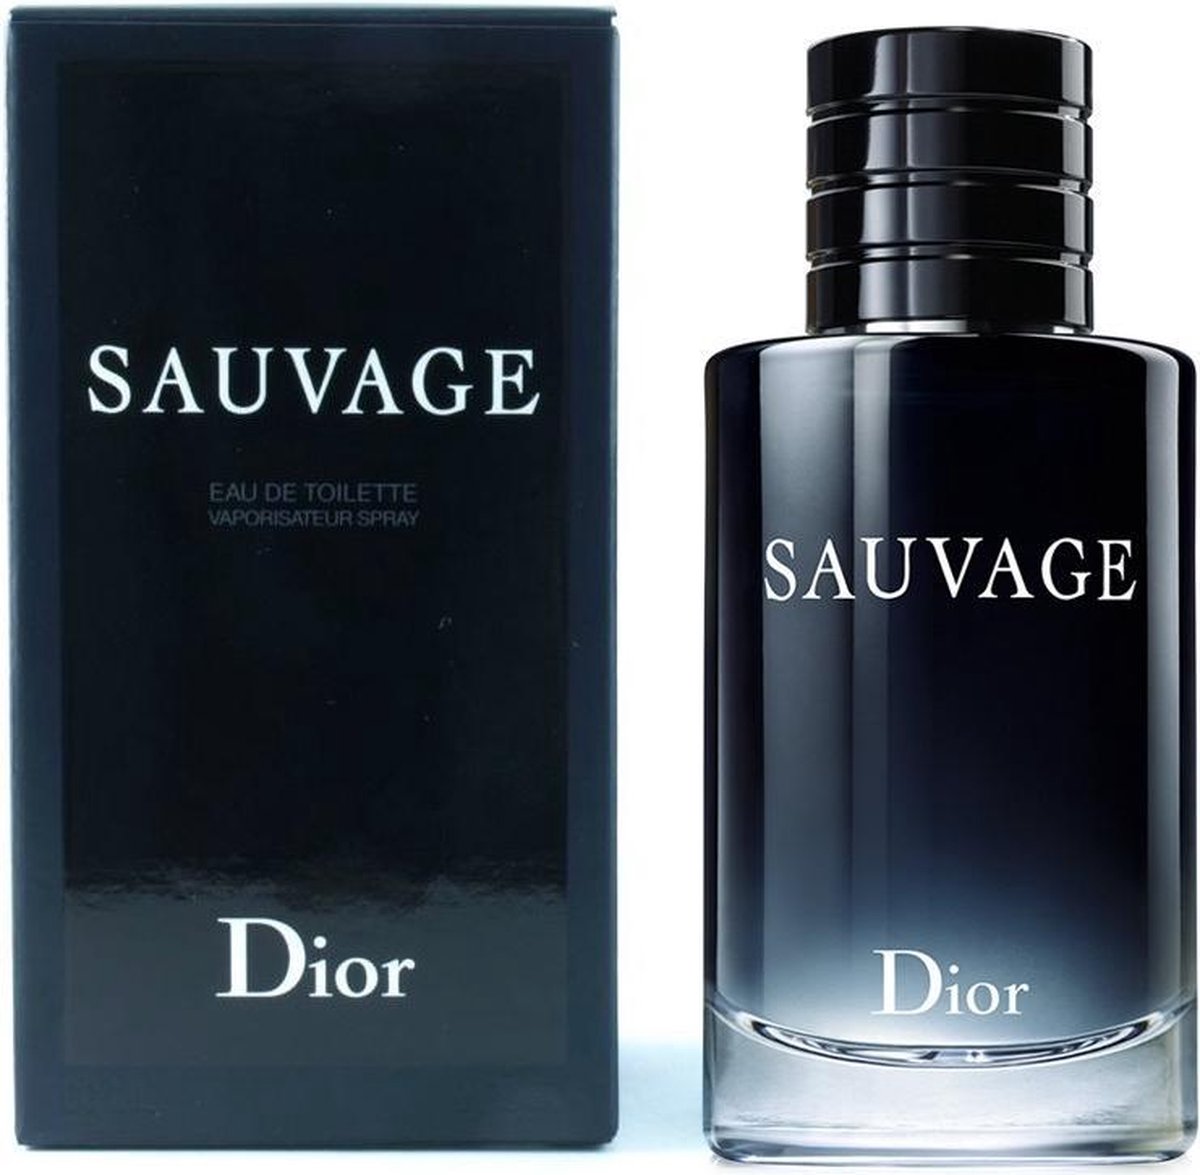 Dior Sauvage douchegel 200 ml bol.com